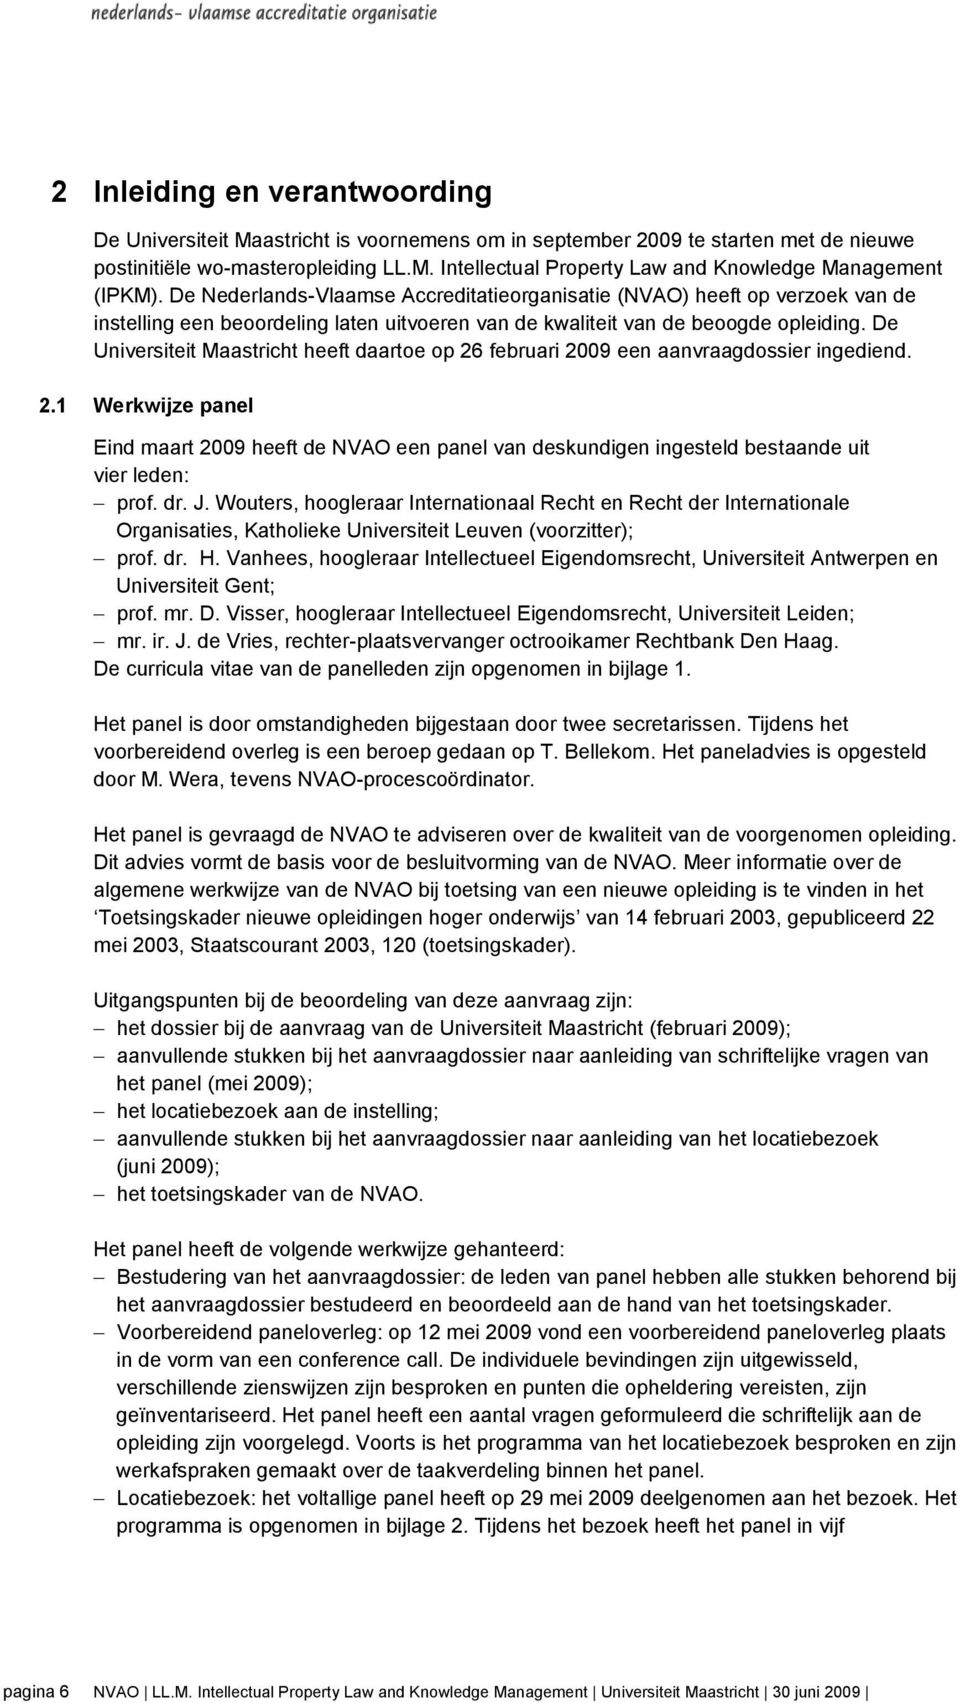 De Universiteit Maastricht heeft daartoe op 26 februari 2009 een aanvraagdossier ingediend. 2.1 Werkwijze panel Eind maart 2009 heeft de NVAO een panel van deskundigen ingesteld bestaande uit vier leden: prof.